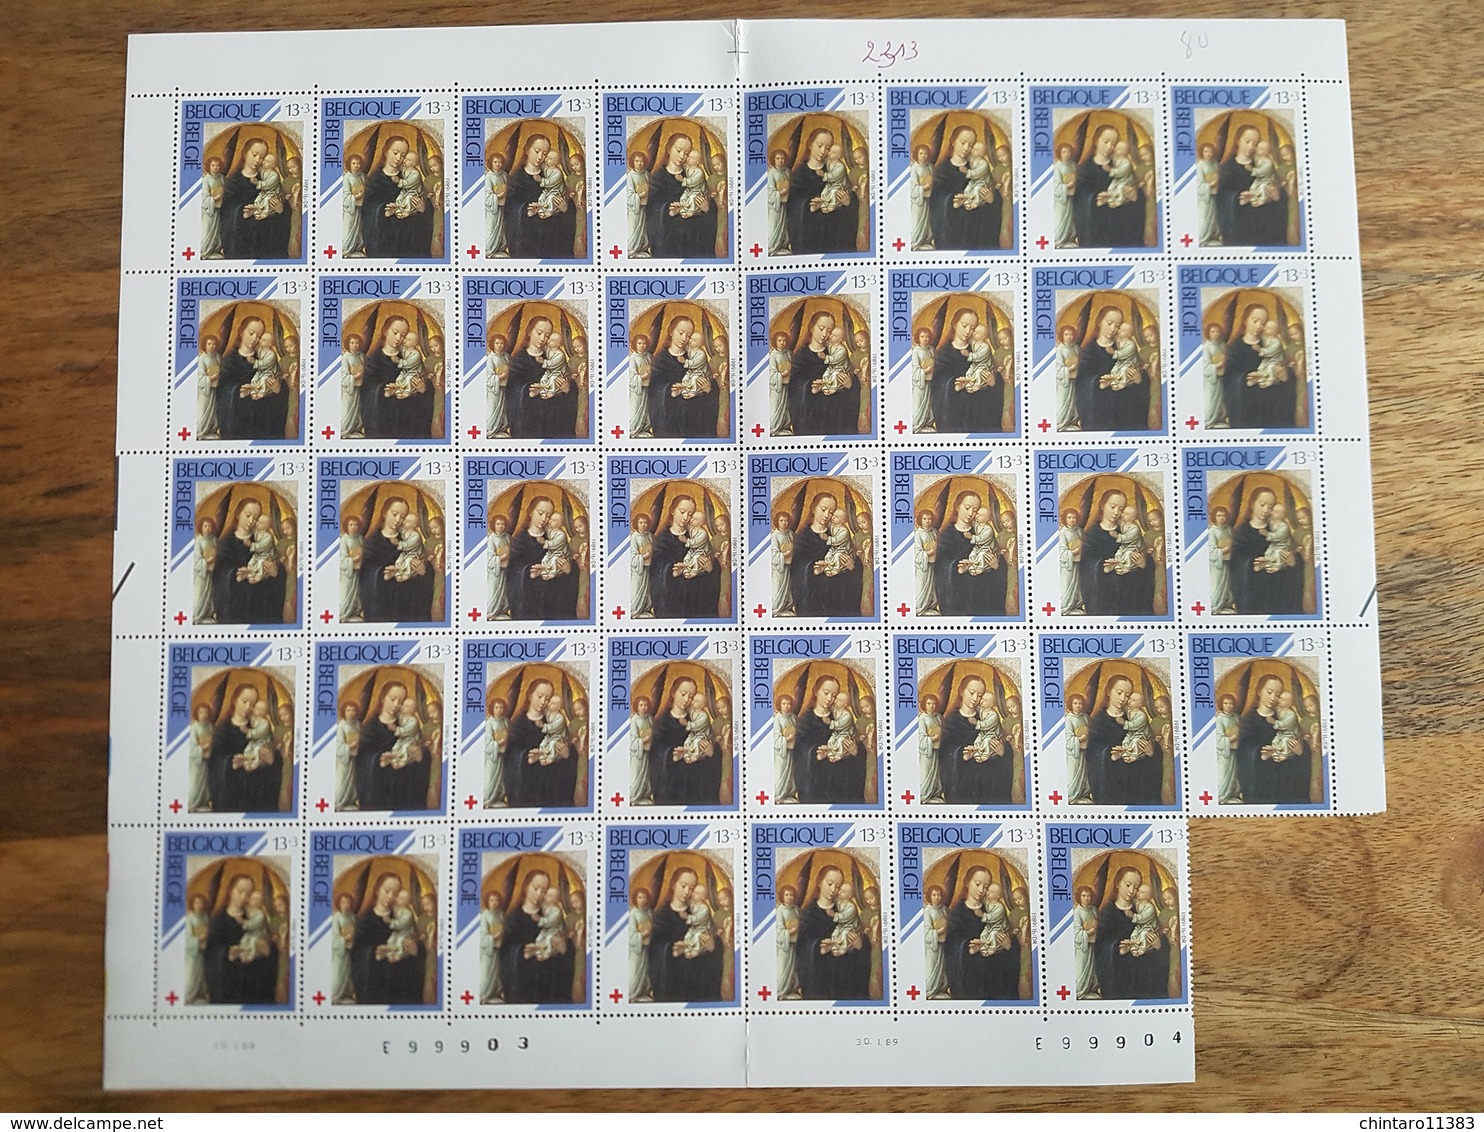 Lot feuilles incomplètes de timbres Belgique - Année 1989